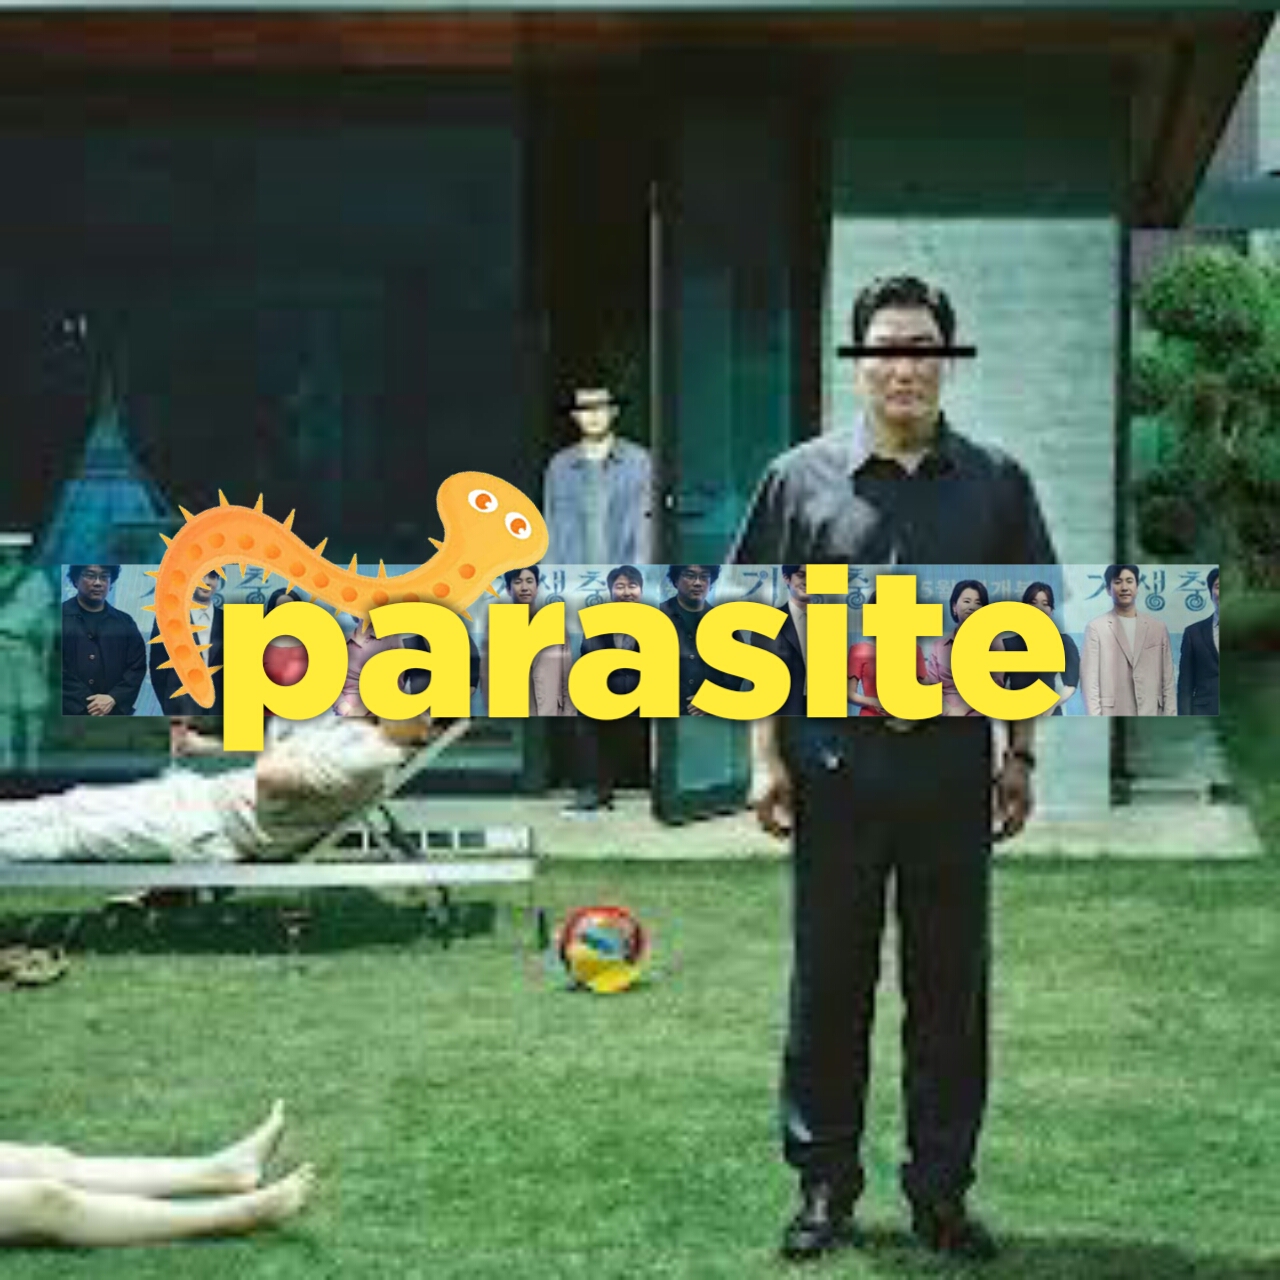 Parasite (2019) ৪ টা অস্কারসহ মোট ১৯৭ টি এওয়ার্ড প্রাপ্ত মাথা ঘুরিয়ে দেবার মত কোরিয়ান মুভি; Reviewed by Tajul Islam